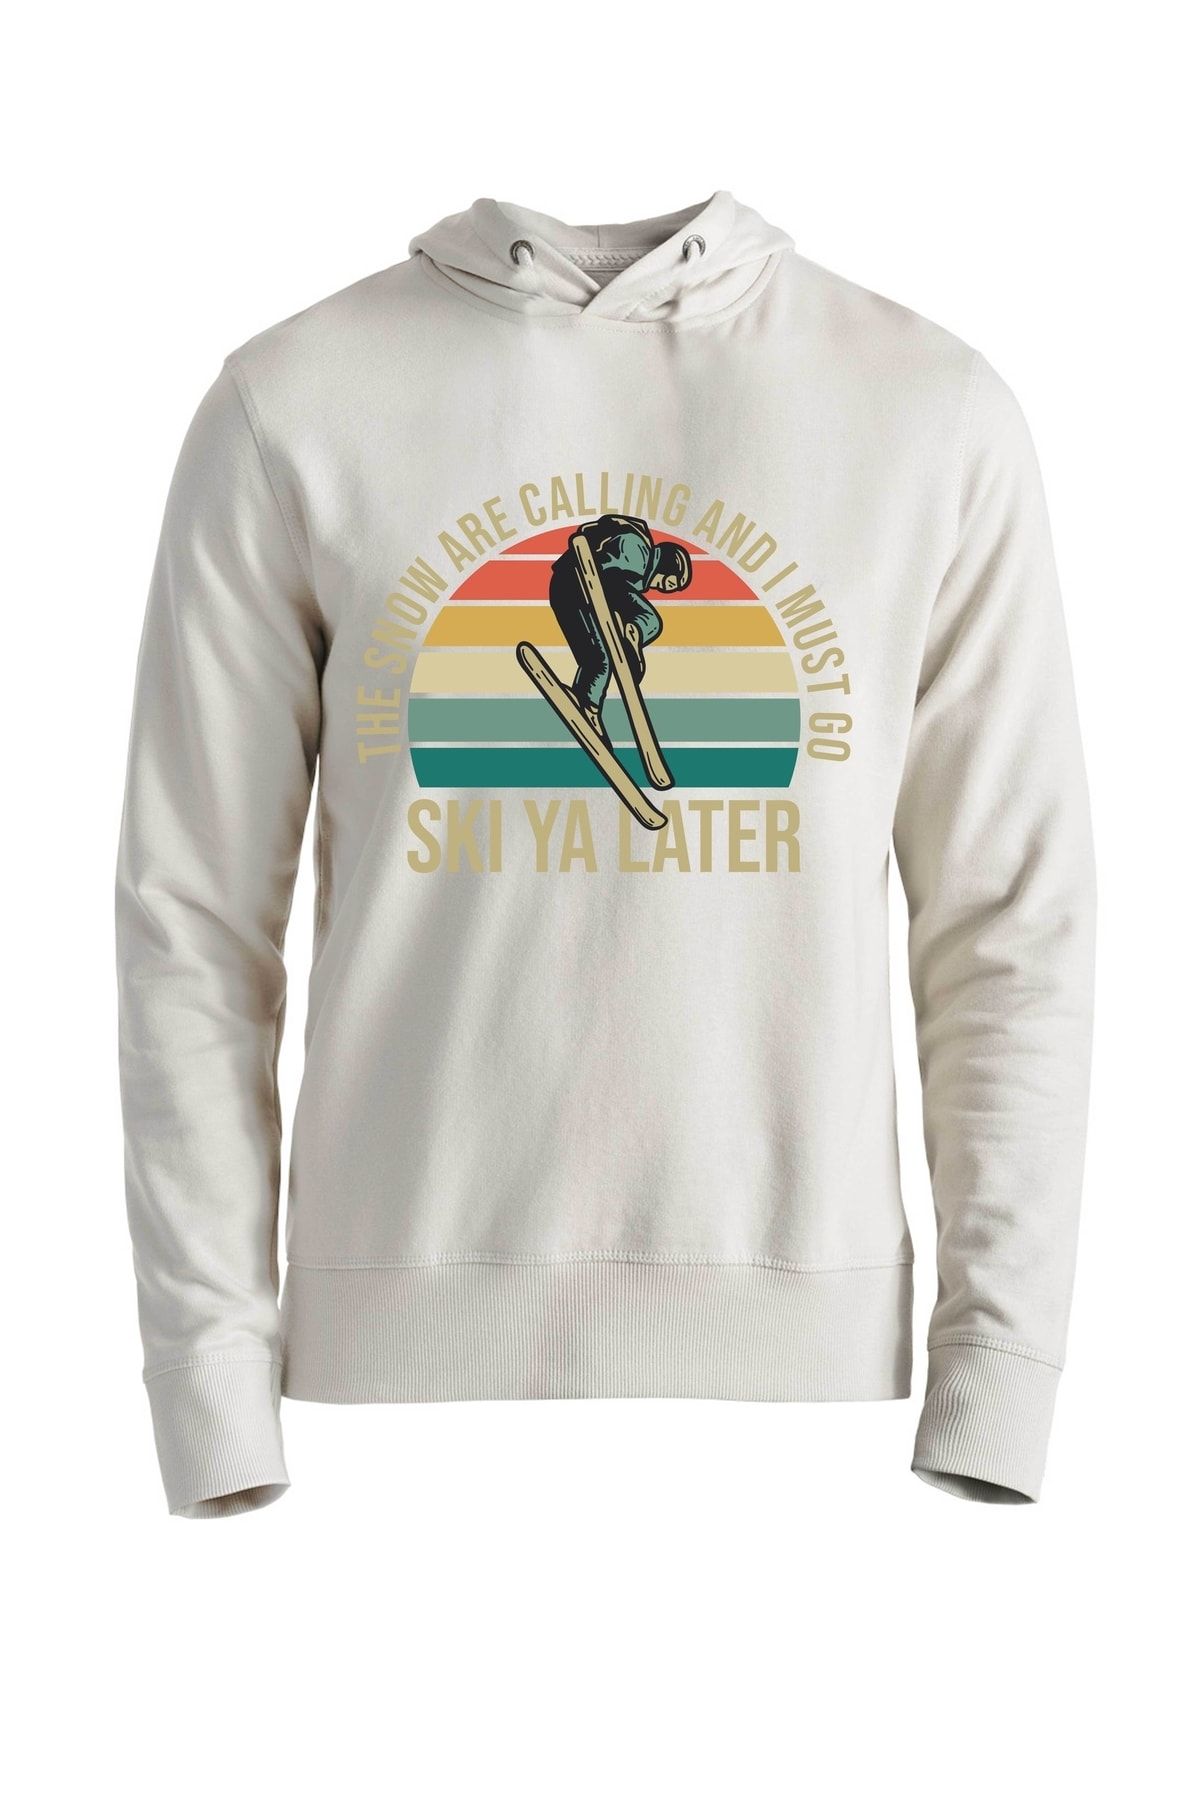 Alfa Tshirt Ski Ya Later Ekru Sweatshirt